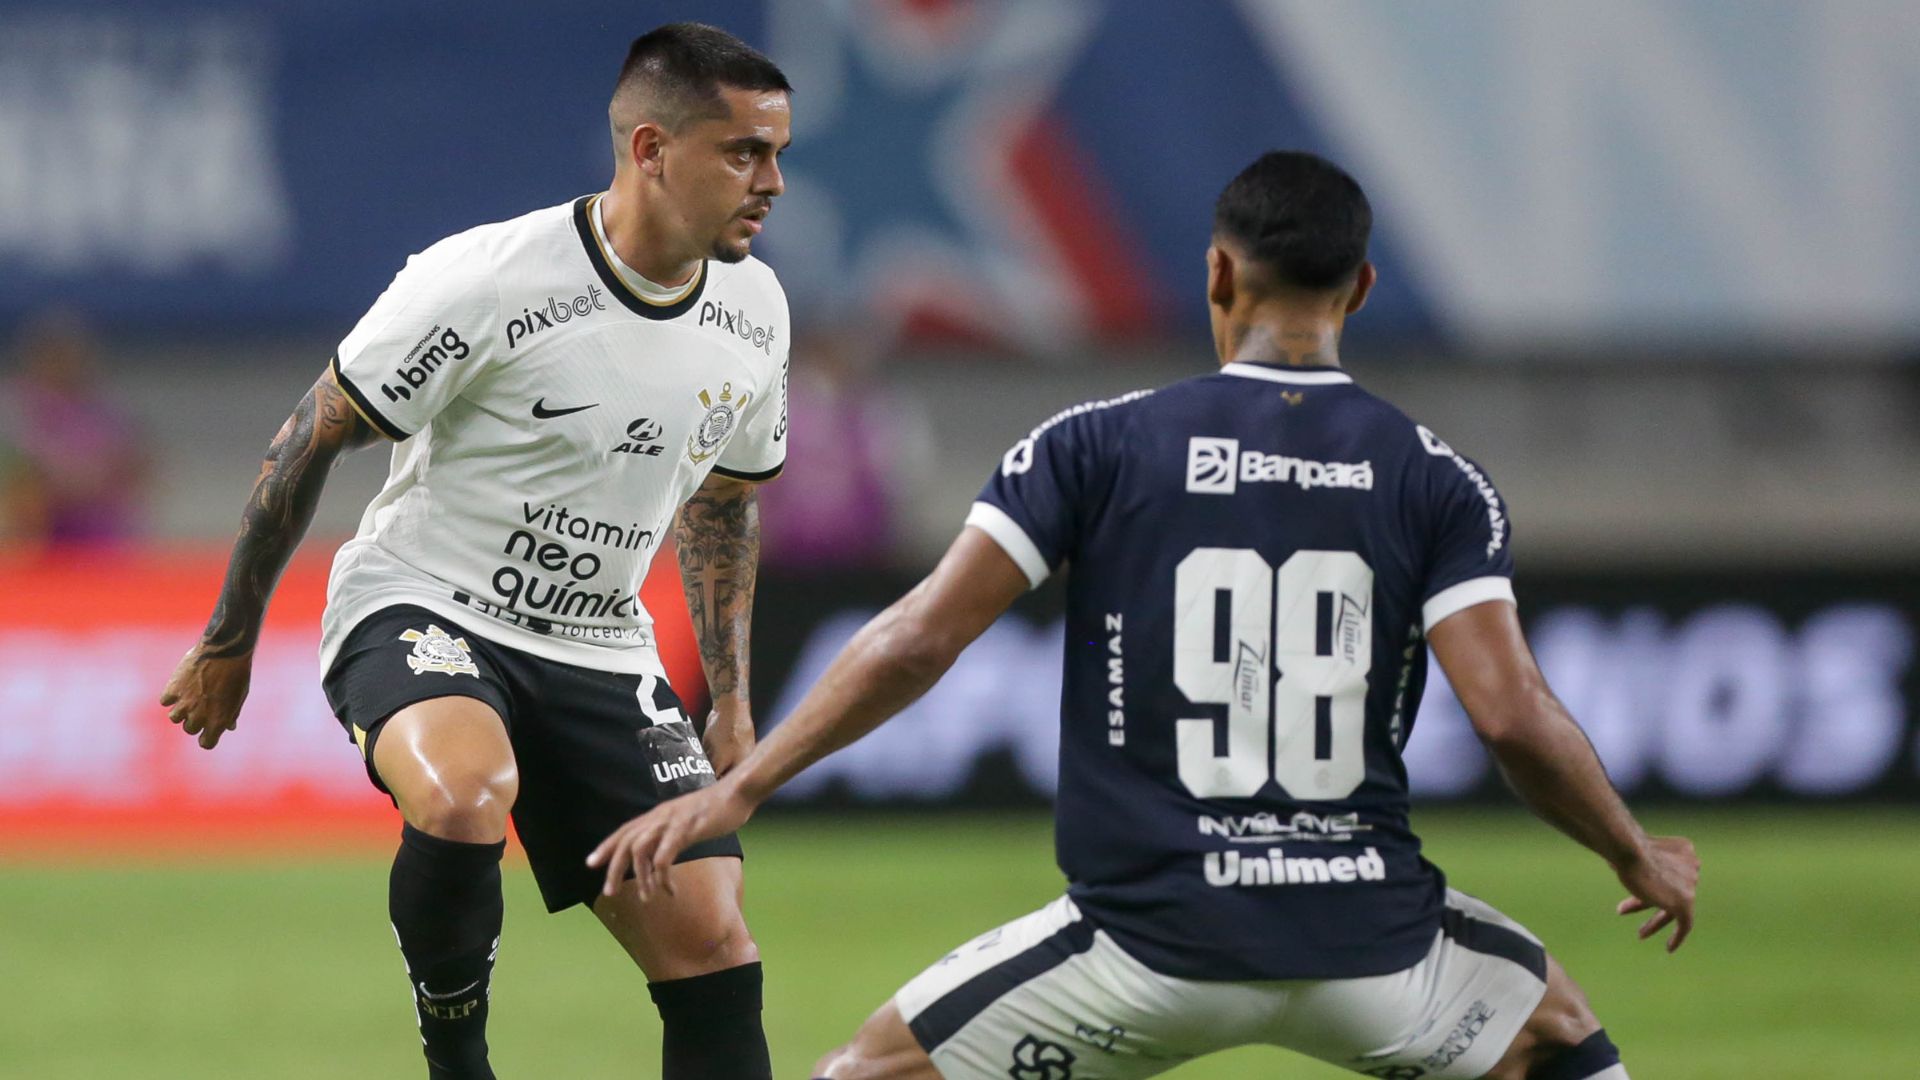 Remo x Corinthians: saiba onde assistir jogo da Copa do Brasil